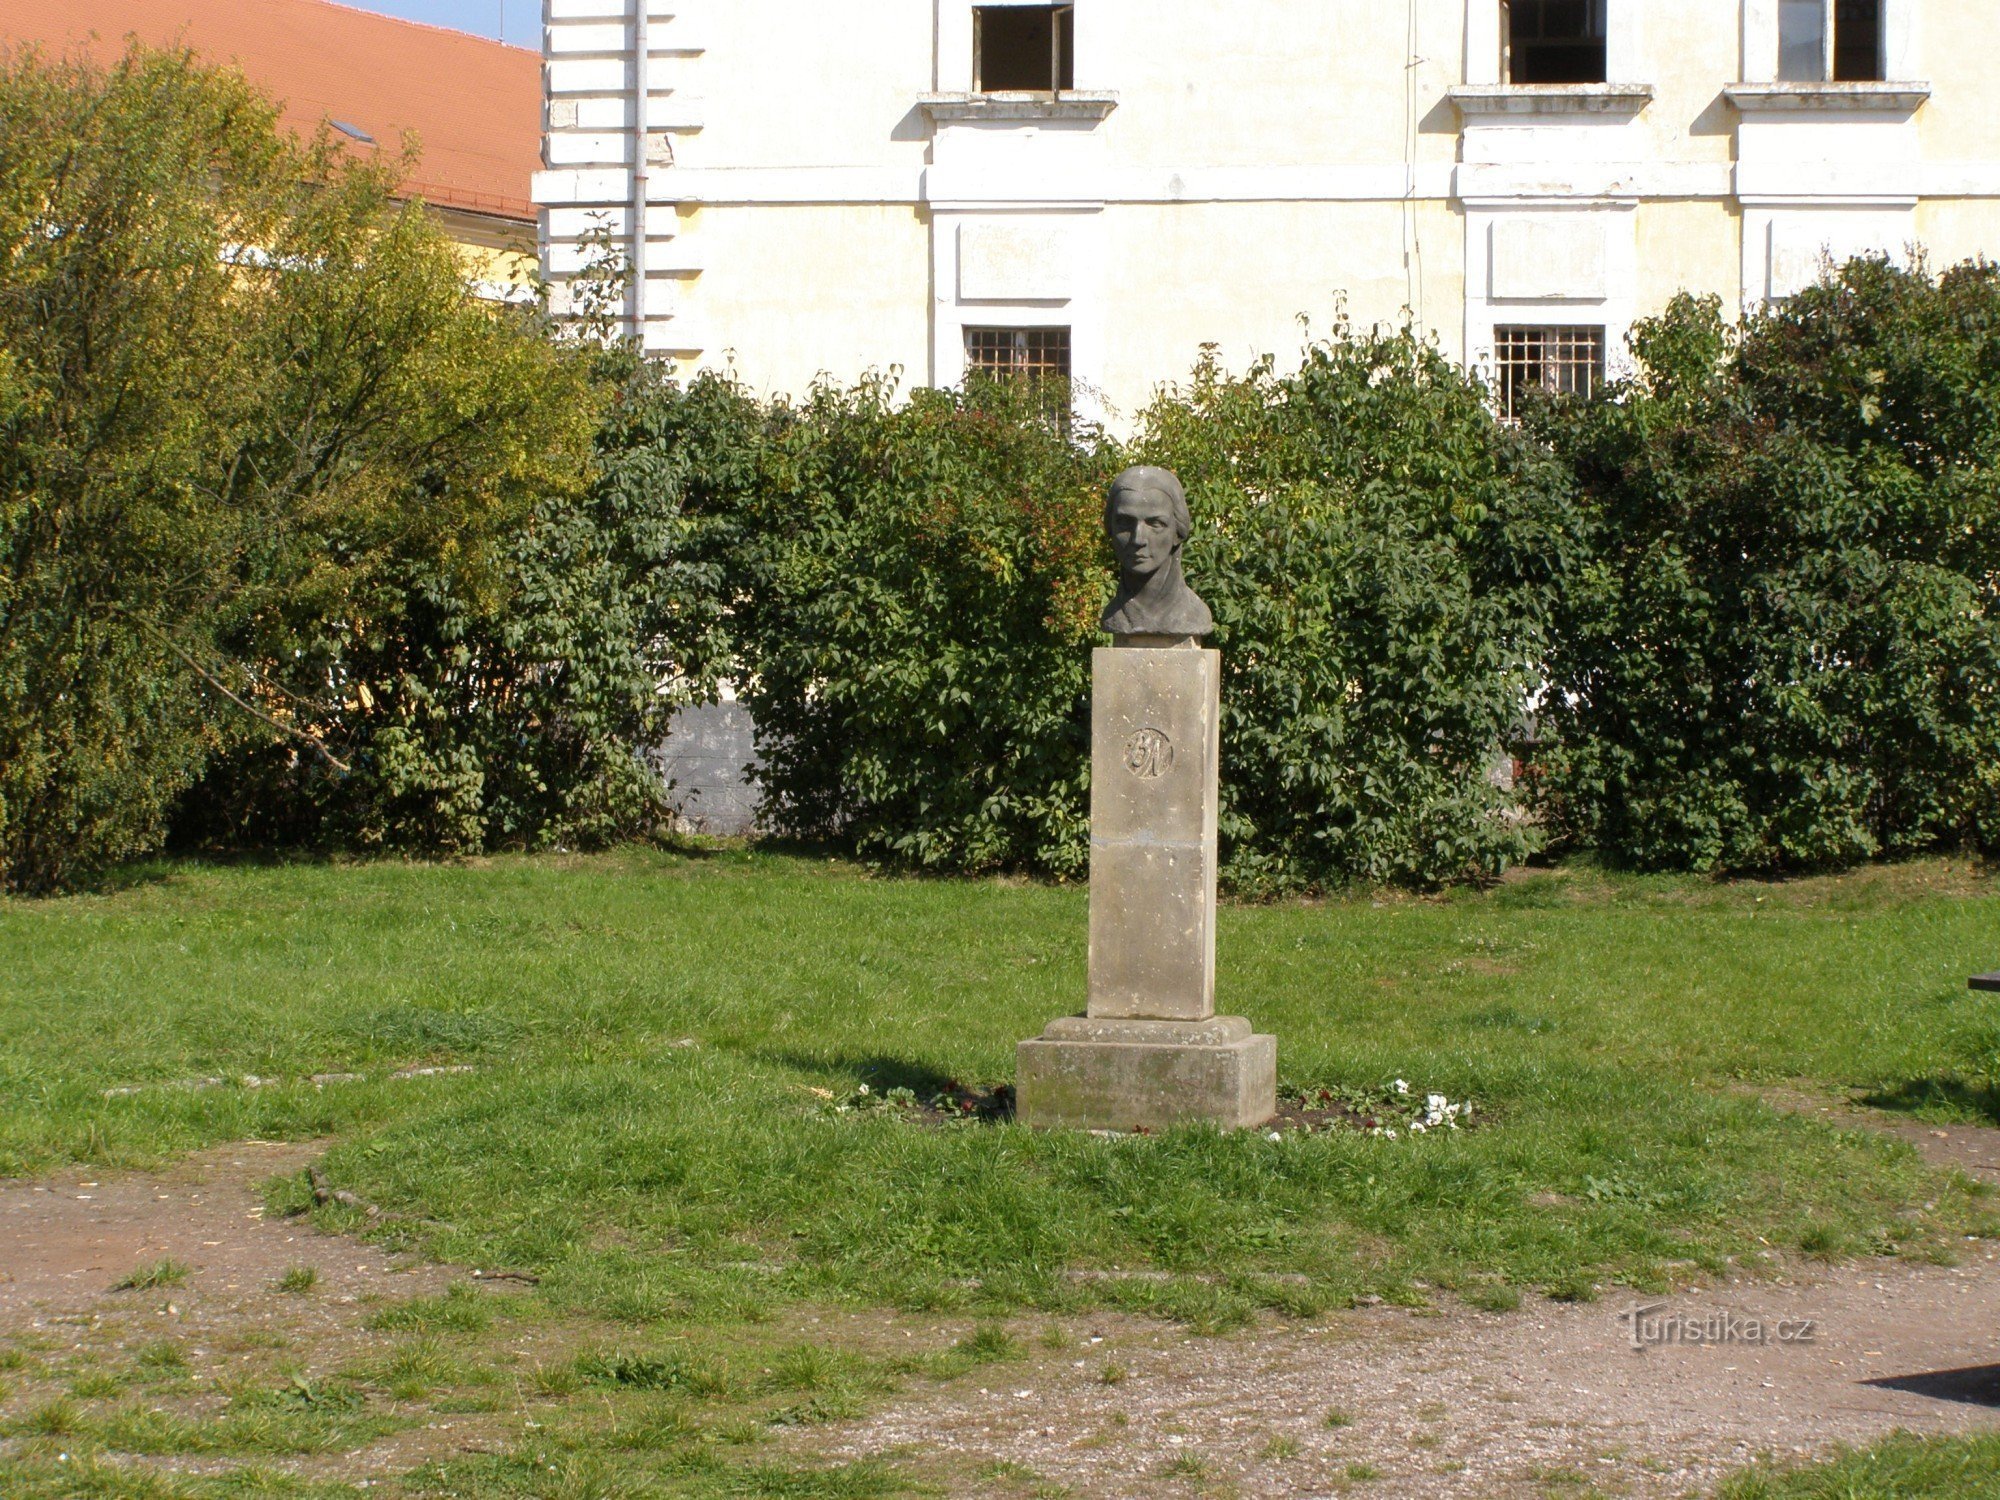 Josefov - spomenik Boženi Němcovi